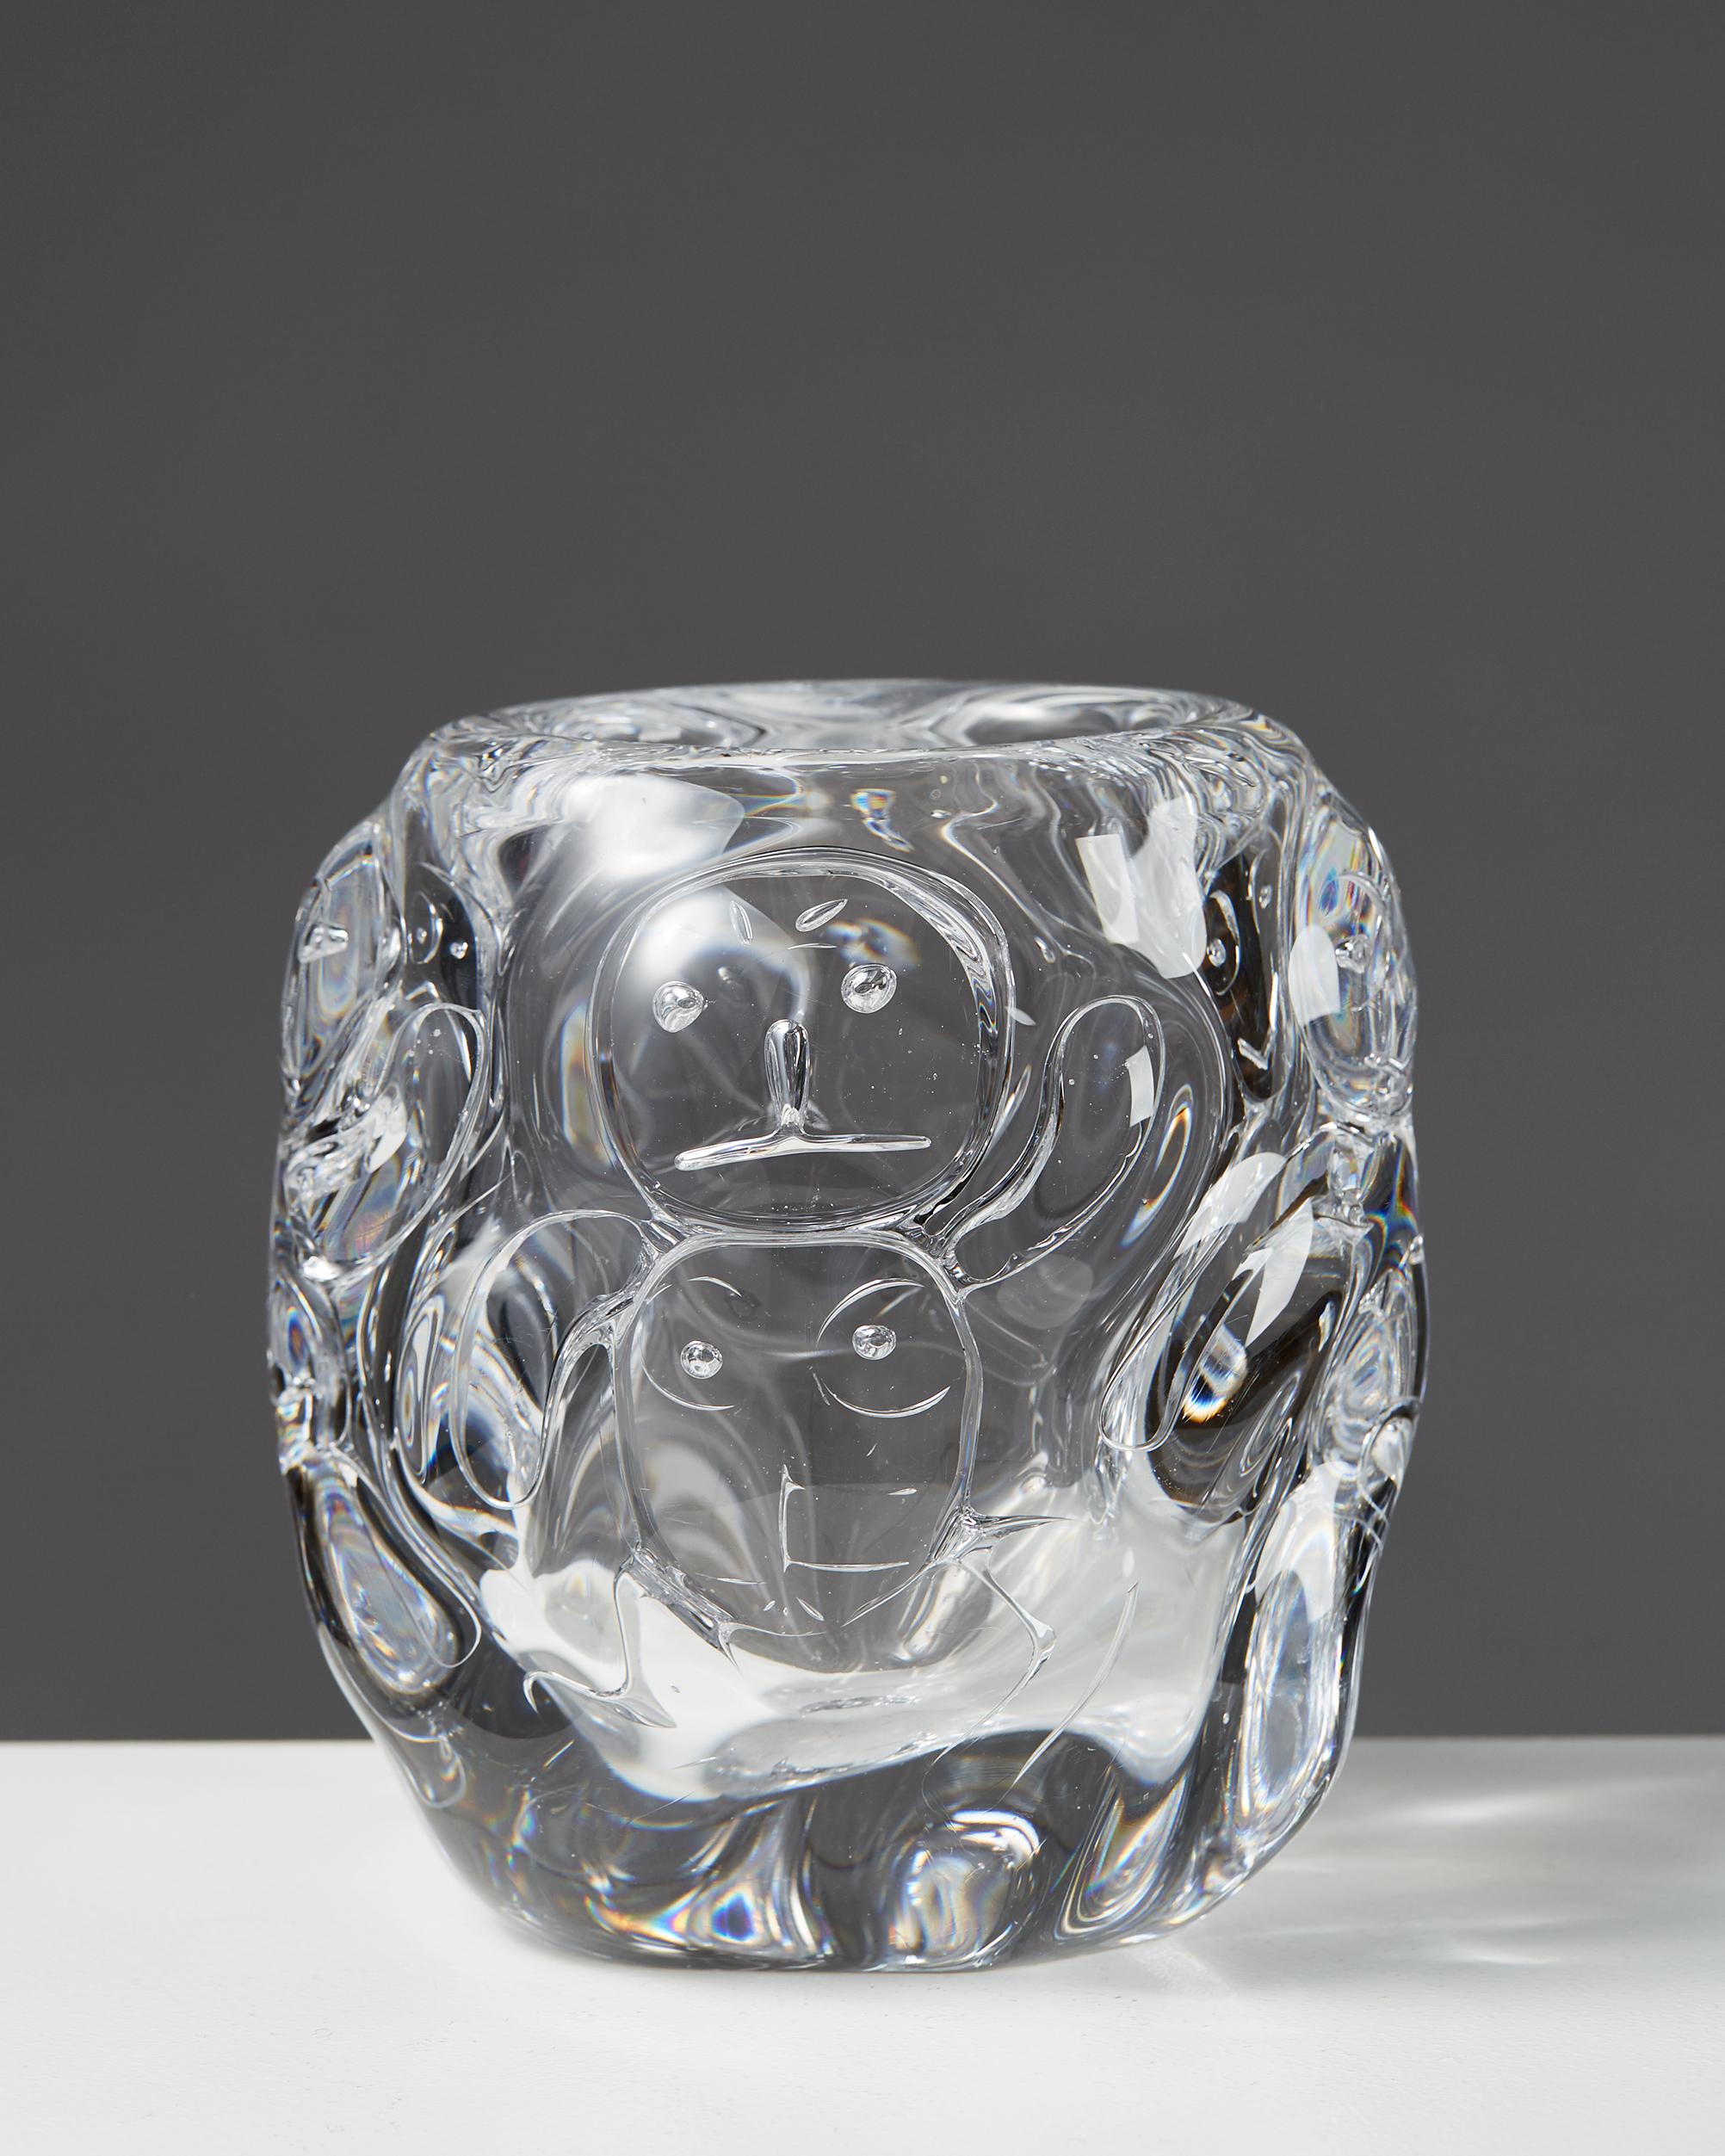 Vase entworfen von Bengt Edenfalk,
Schweden. 1960.

Glas.

Einzigartig. Talatta-Technik.

Abmessungen: 
H: 17 cm/ 6 3/4''
T: 16 cm/ 6 1/4''